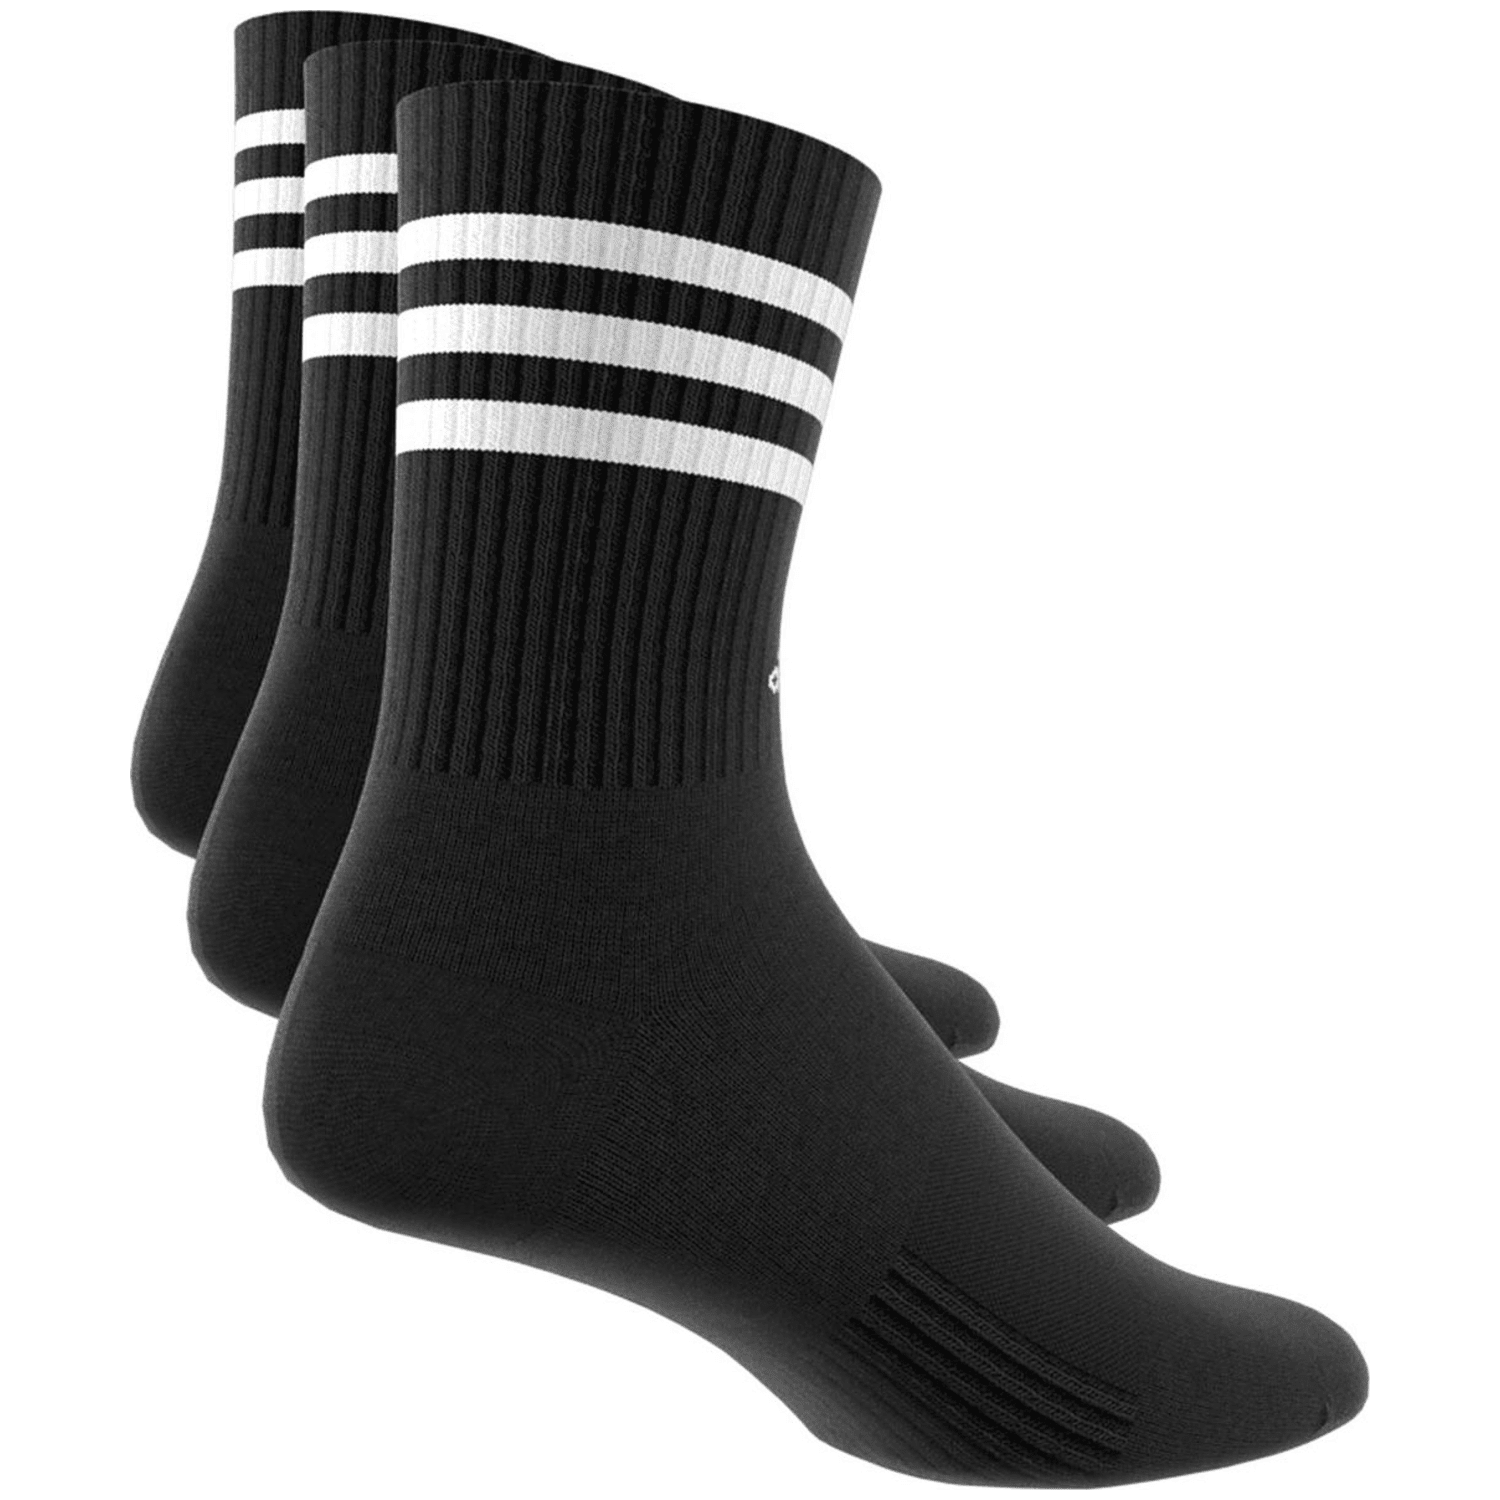 Adidas 3-Streifen Cushioned Crew Socken, 3 Paar Unisex